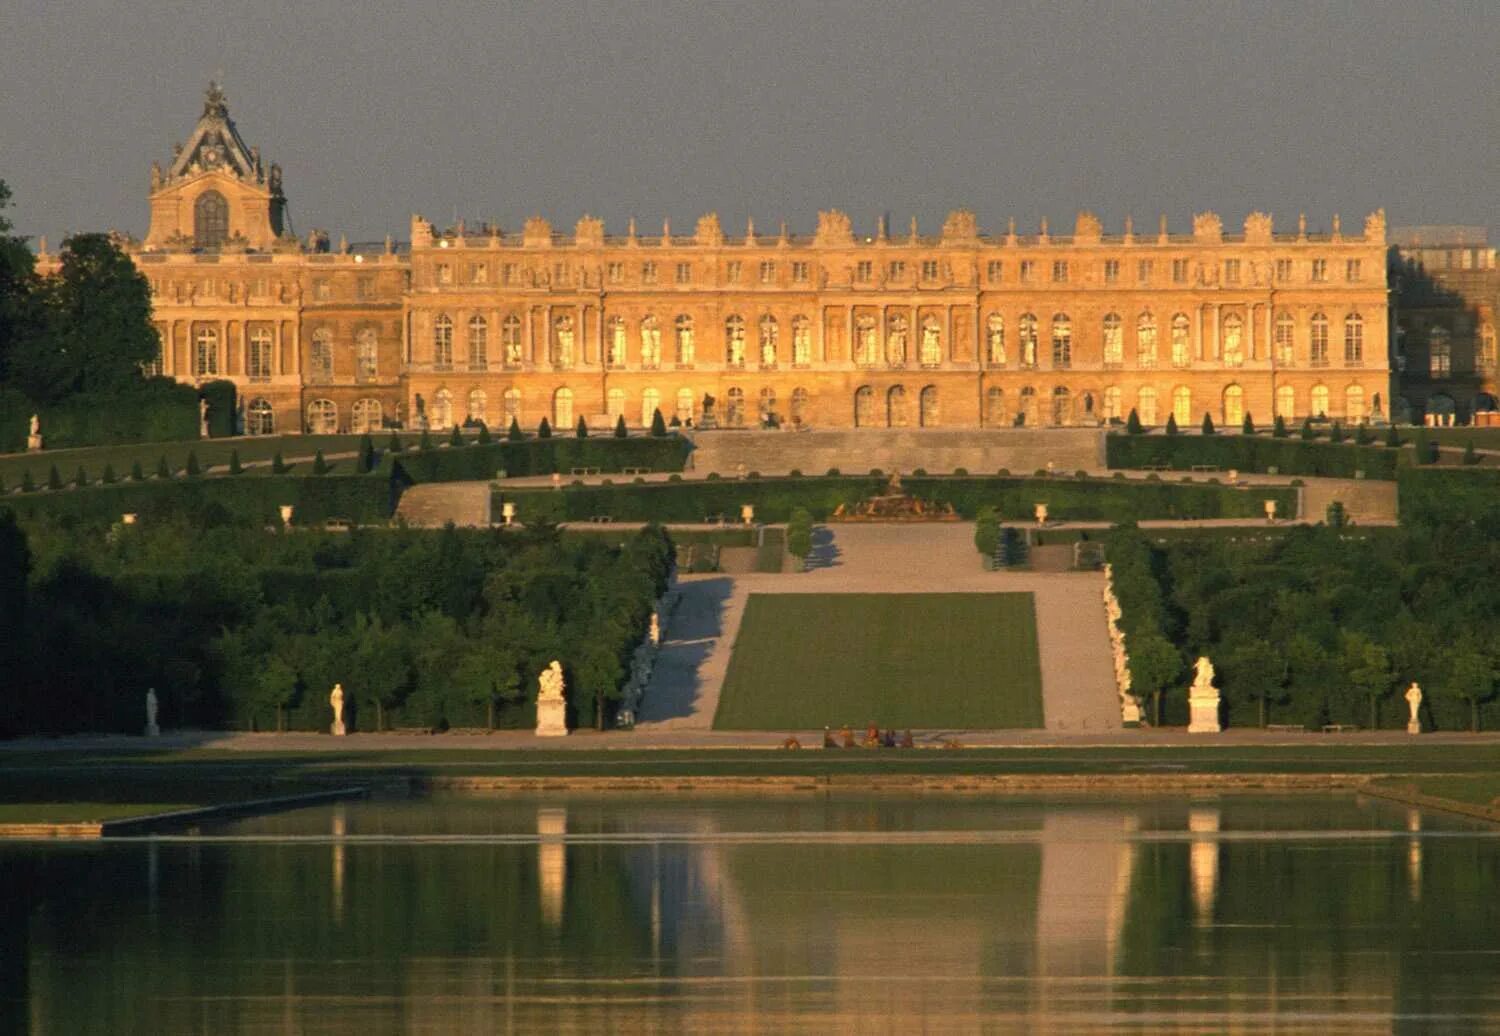 Французский версаль. Версальский дворец Версаль Франция. Королевский дворец в Версале. Версаль дворец французских королей. Дворцово-парковый комплекс Версаль (Париж, Франция).